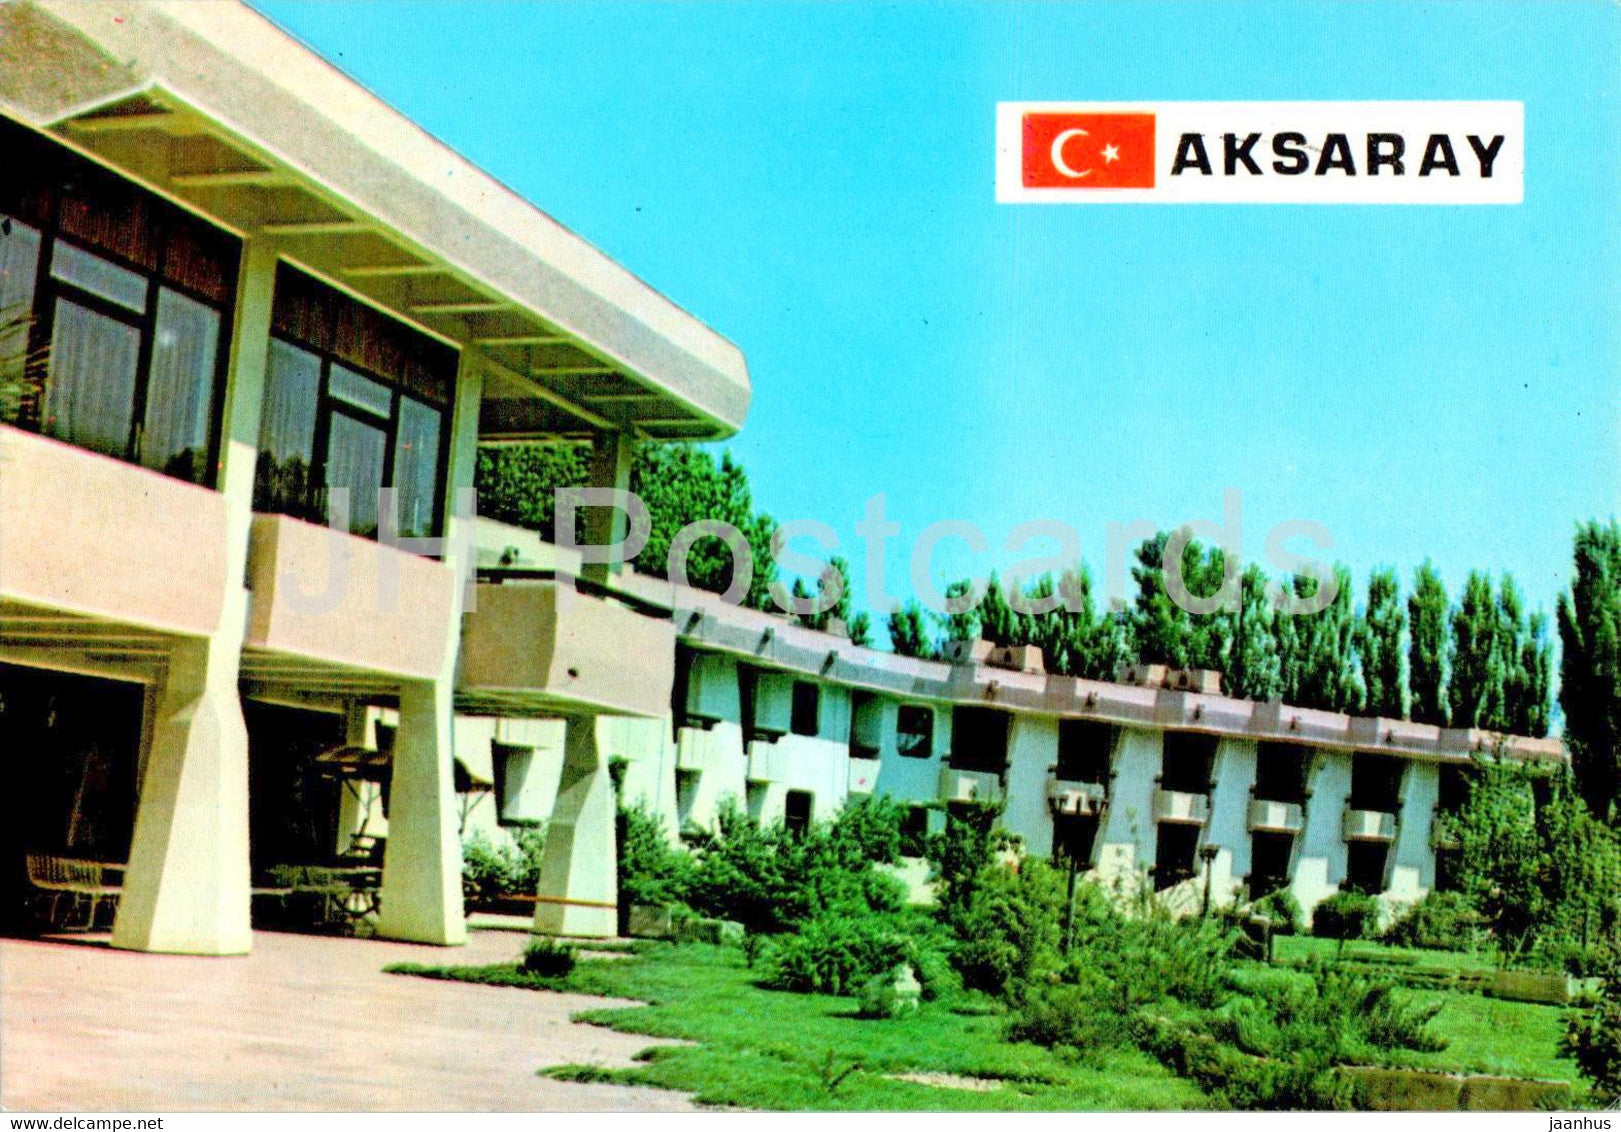 Aksaray - Agacli Tesisleri - 51-23 - Turkey - unused - JH Postcards